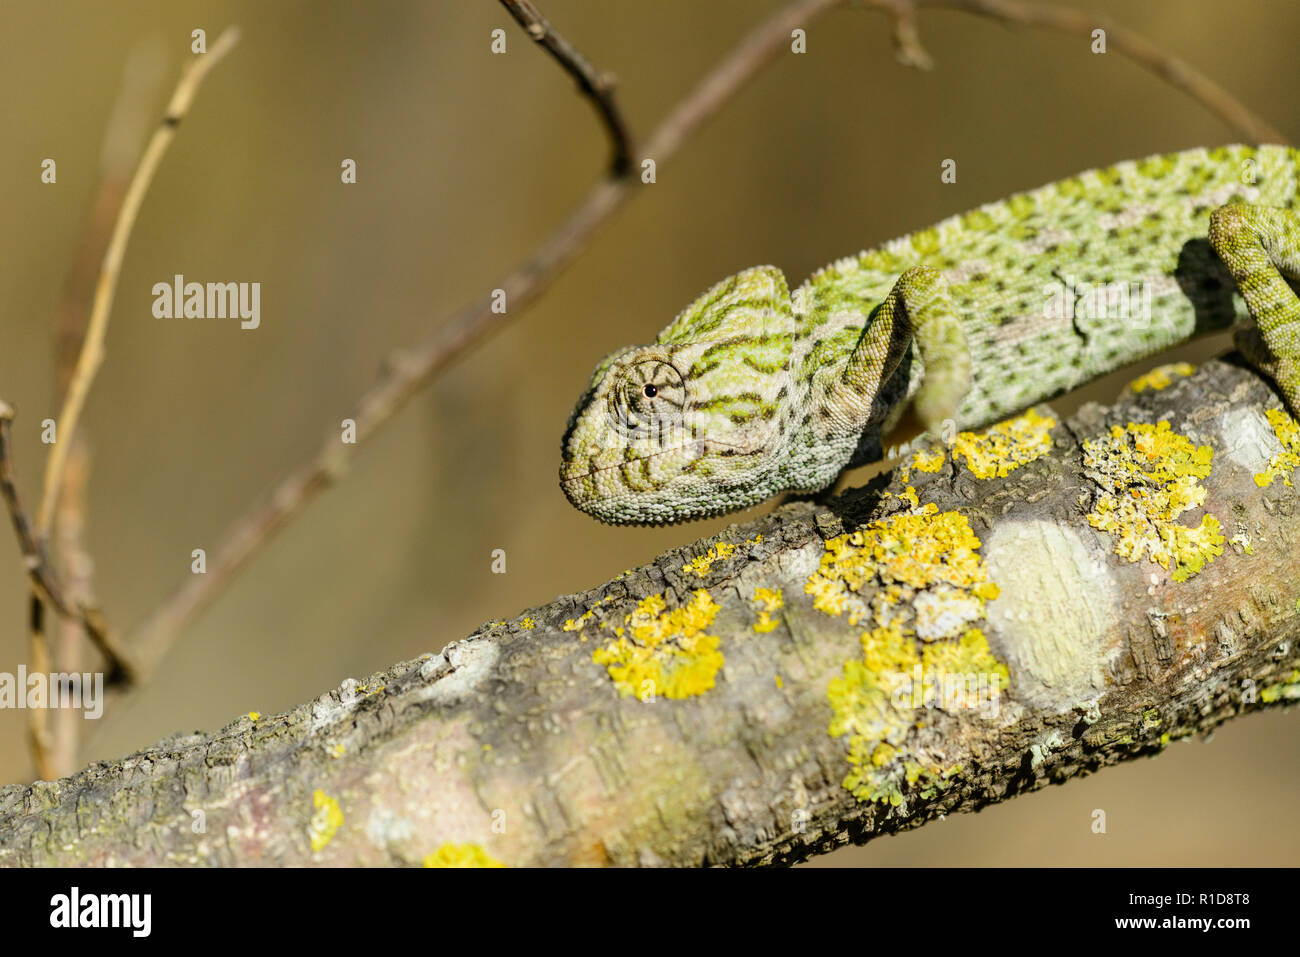 Mediterranean Chameleon (Chameleo chameleon) Stock Photo